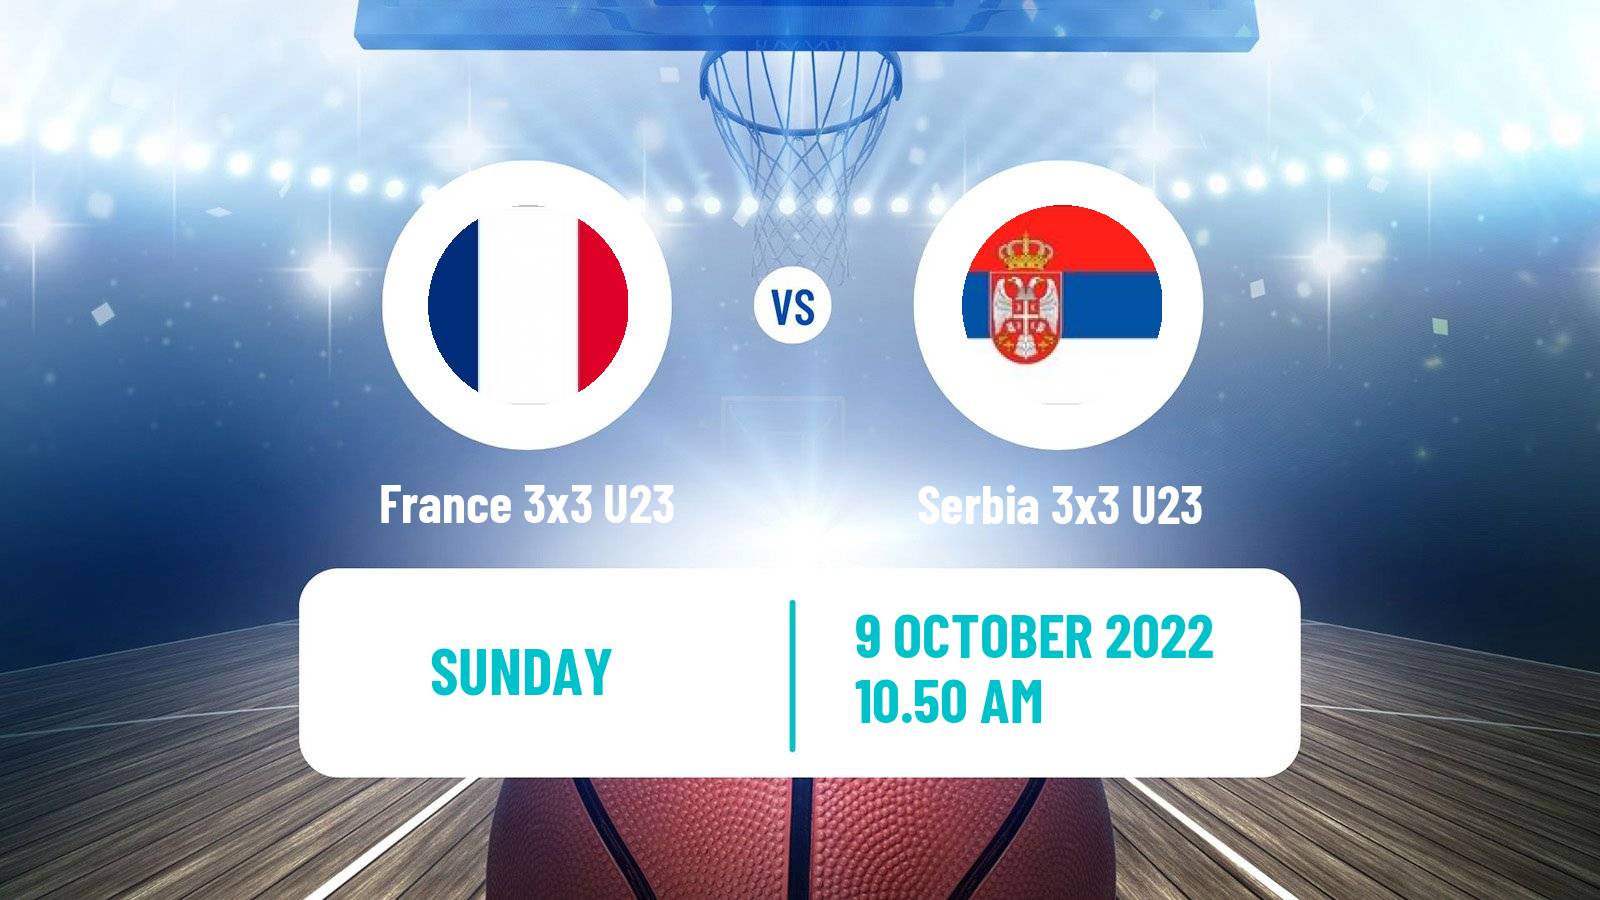 Basketball World Cup Basketball 3x3 U23 France 3x3 U23 - Serbia 3x3 U23